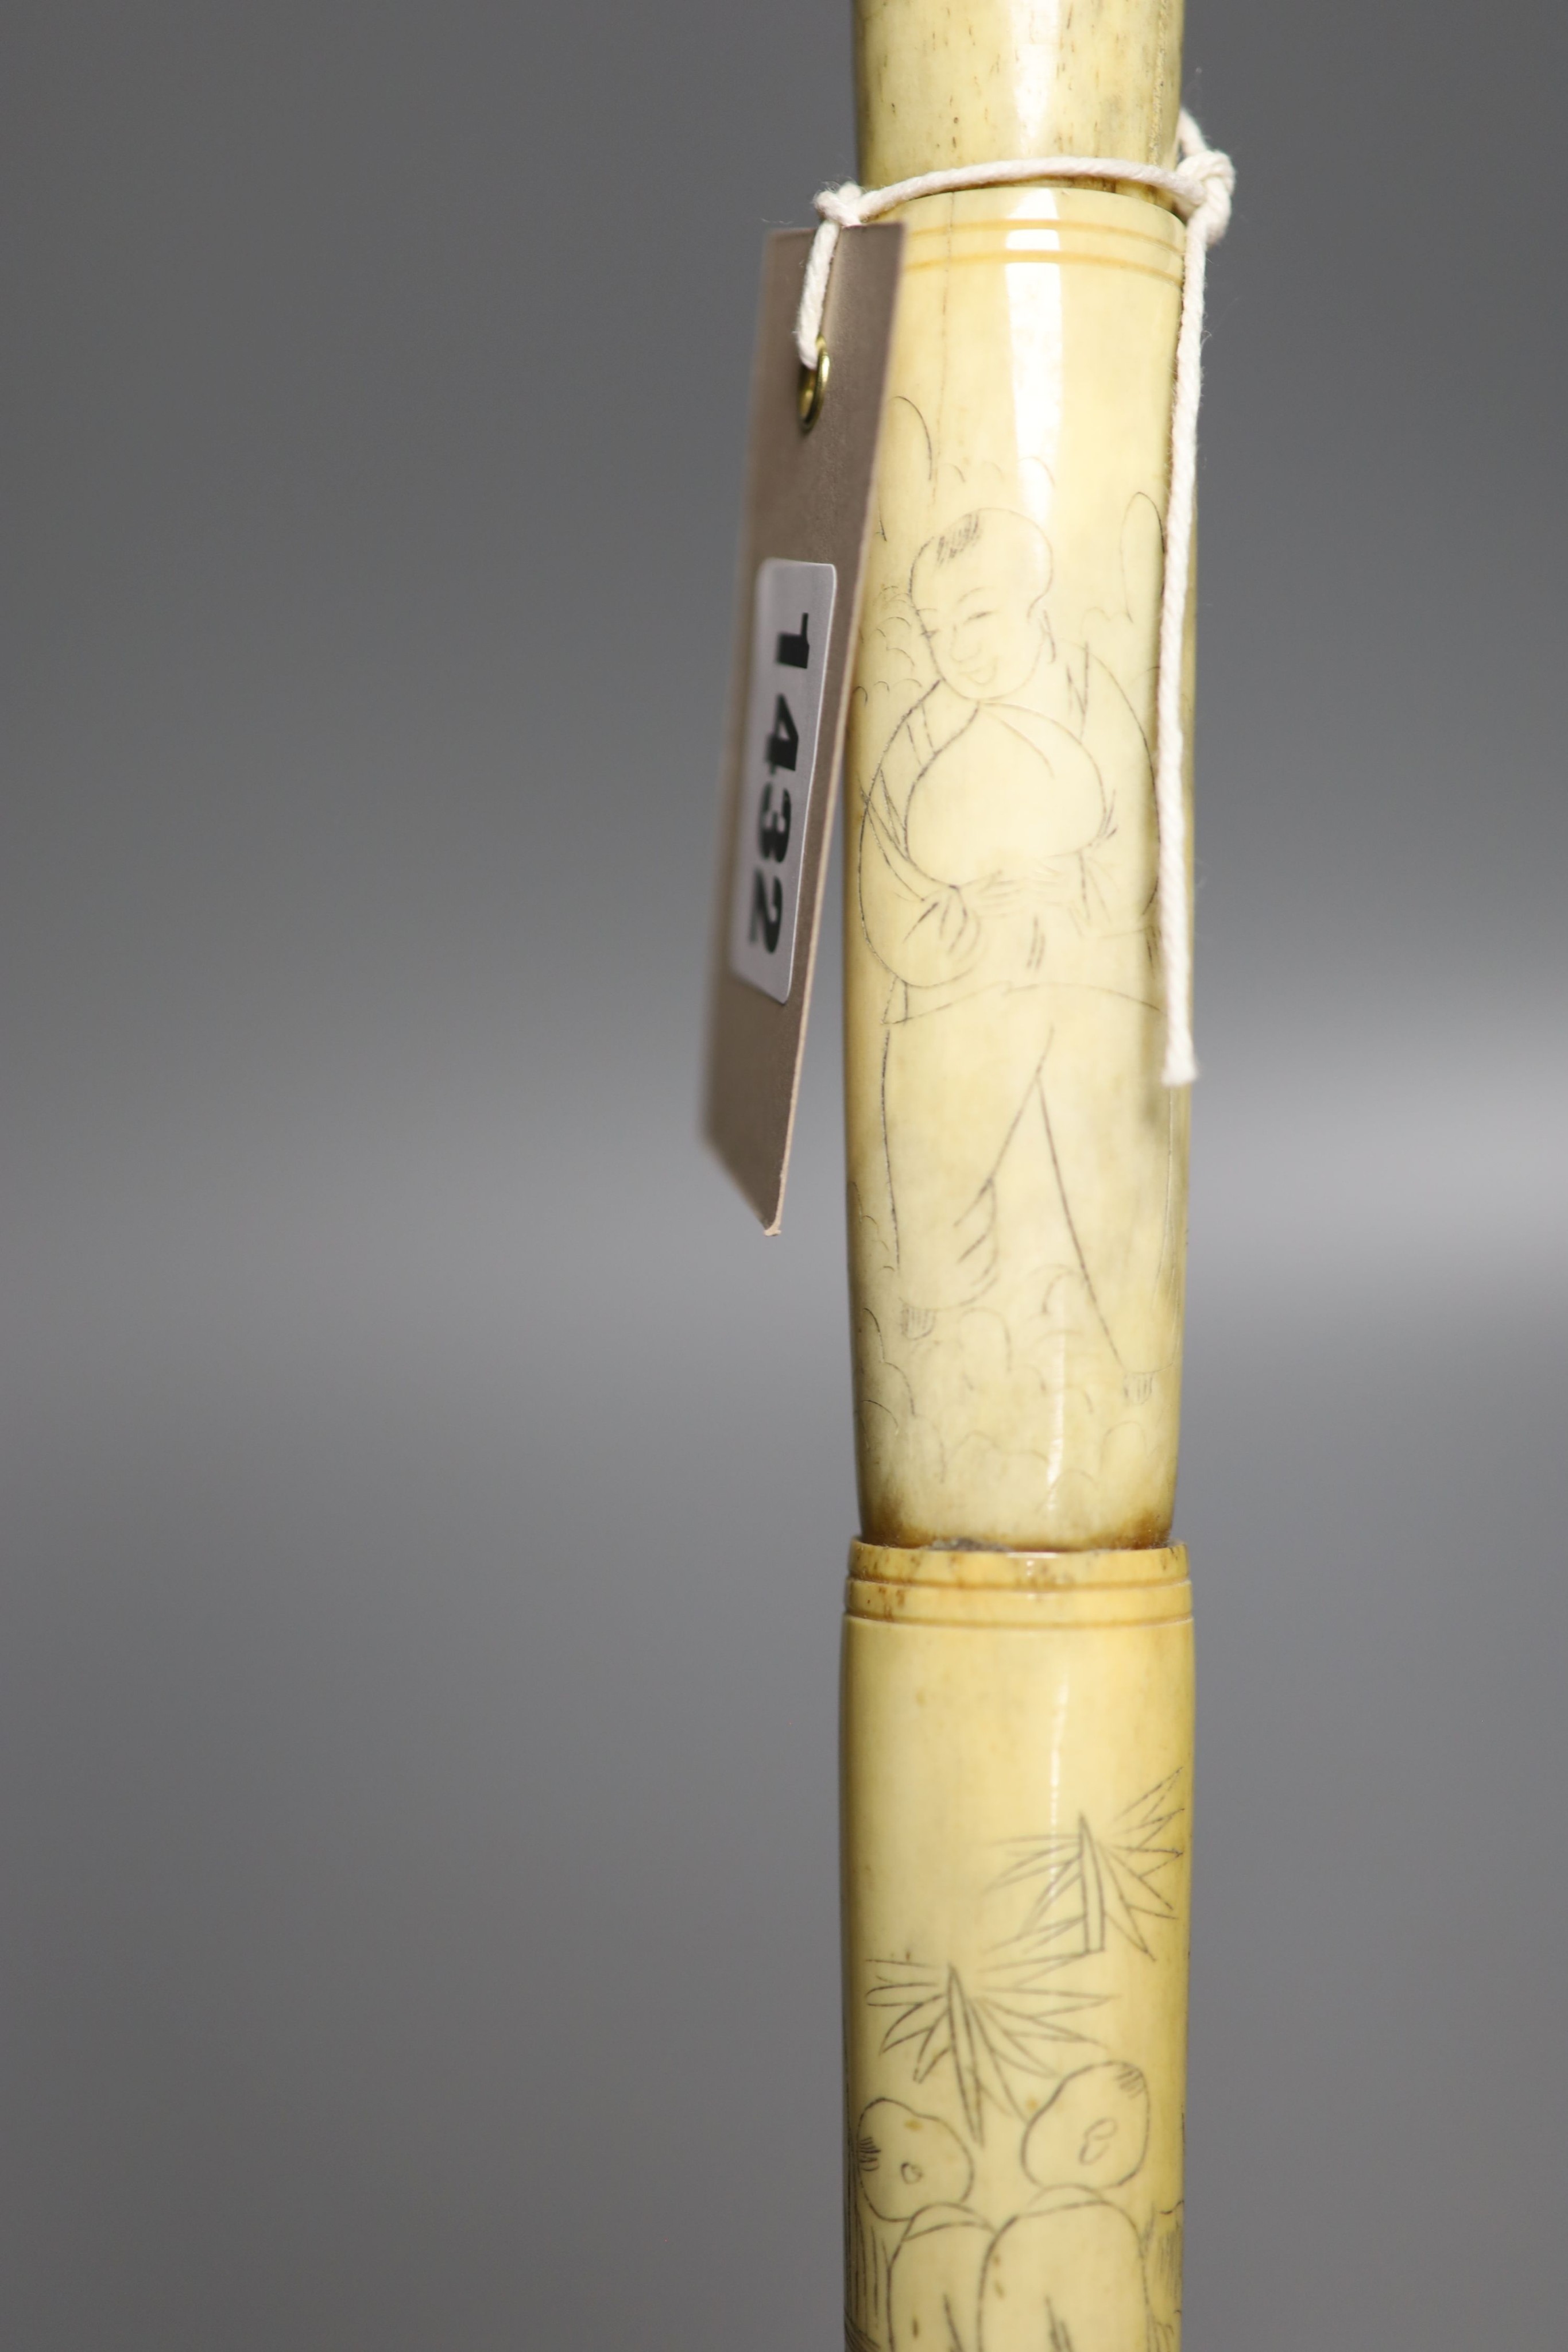 An engraved bone walking cane, 84cm - Image 2 of 5